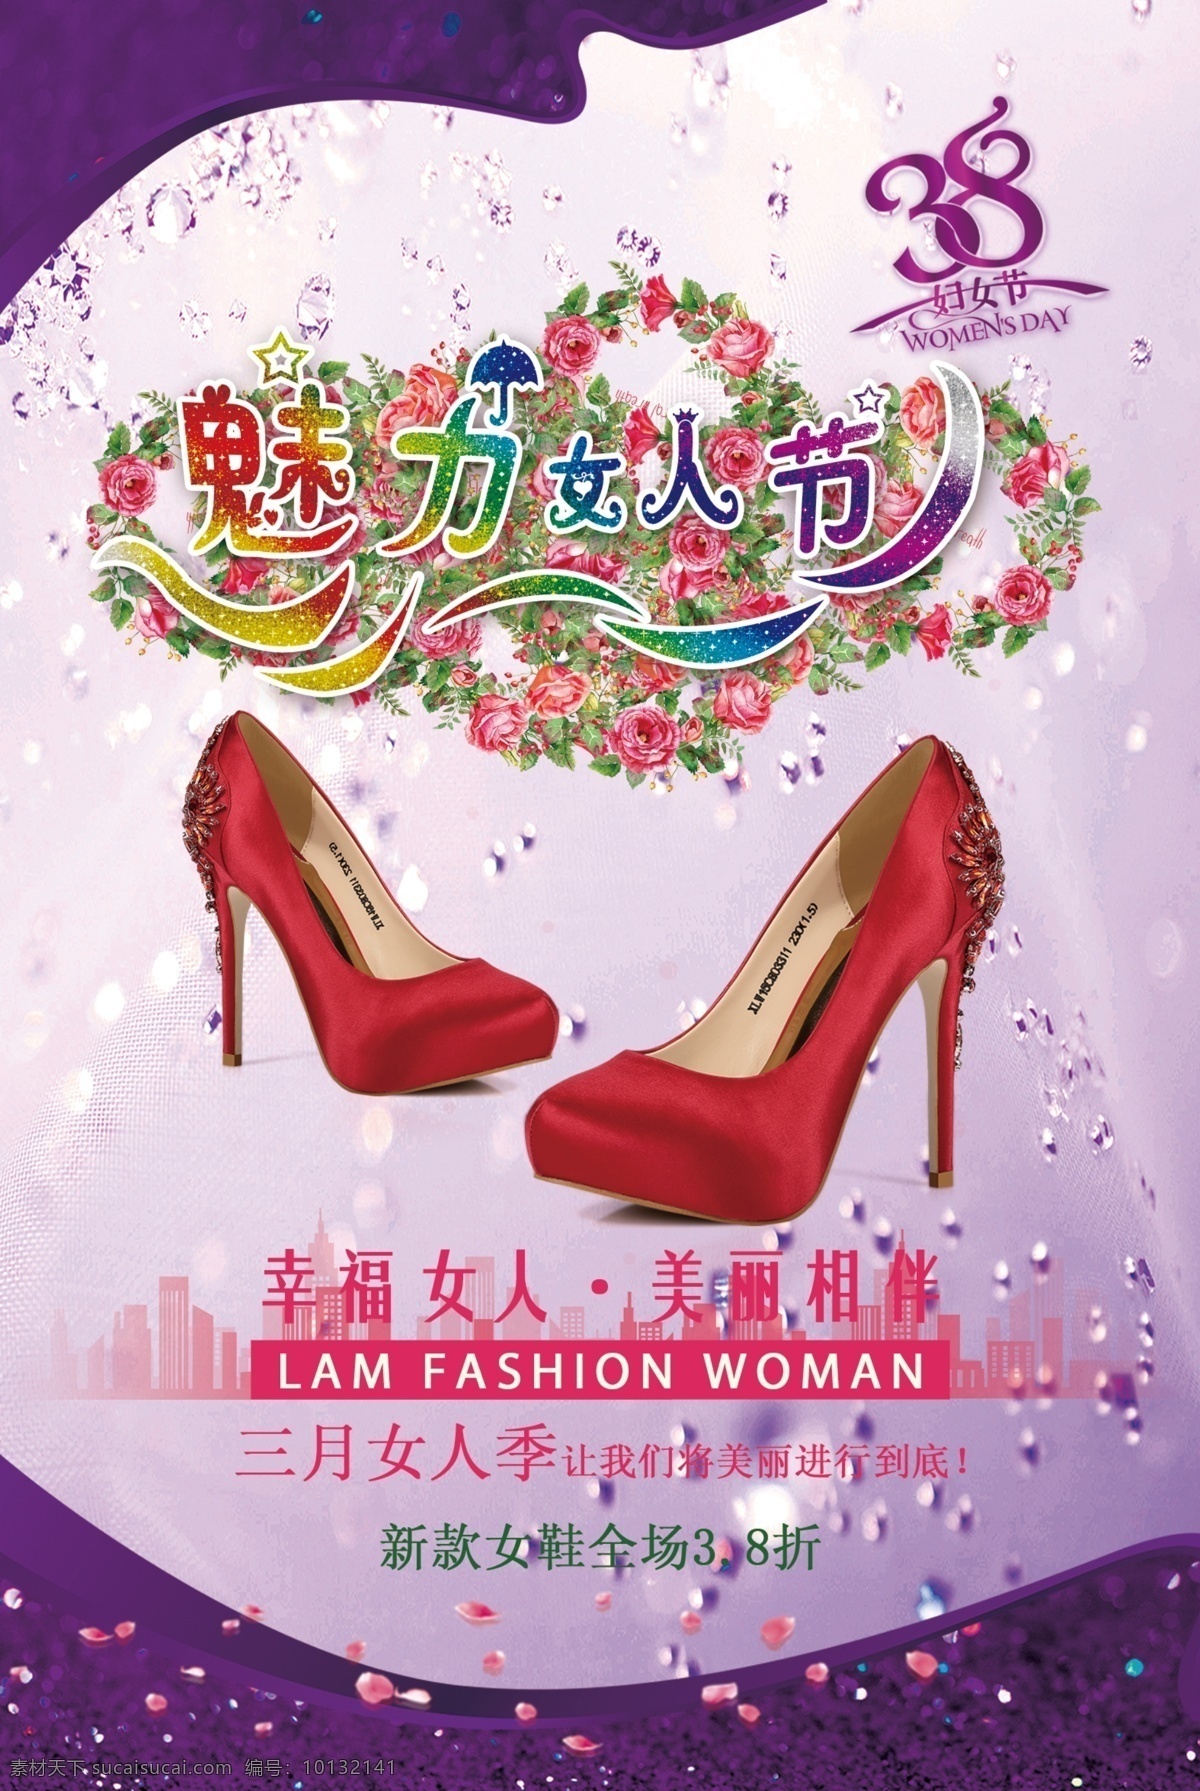 38 女人 节 鞋店 海报 38妇女节 女人节 女鞋 紫色 红色